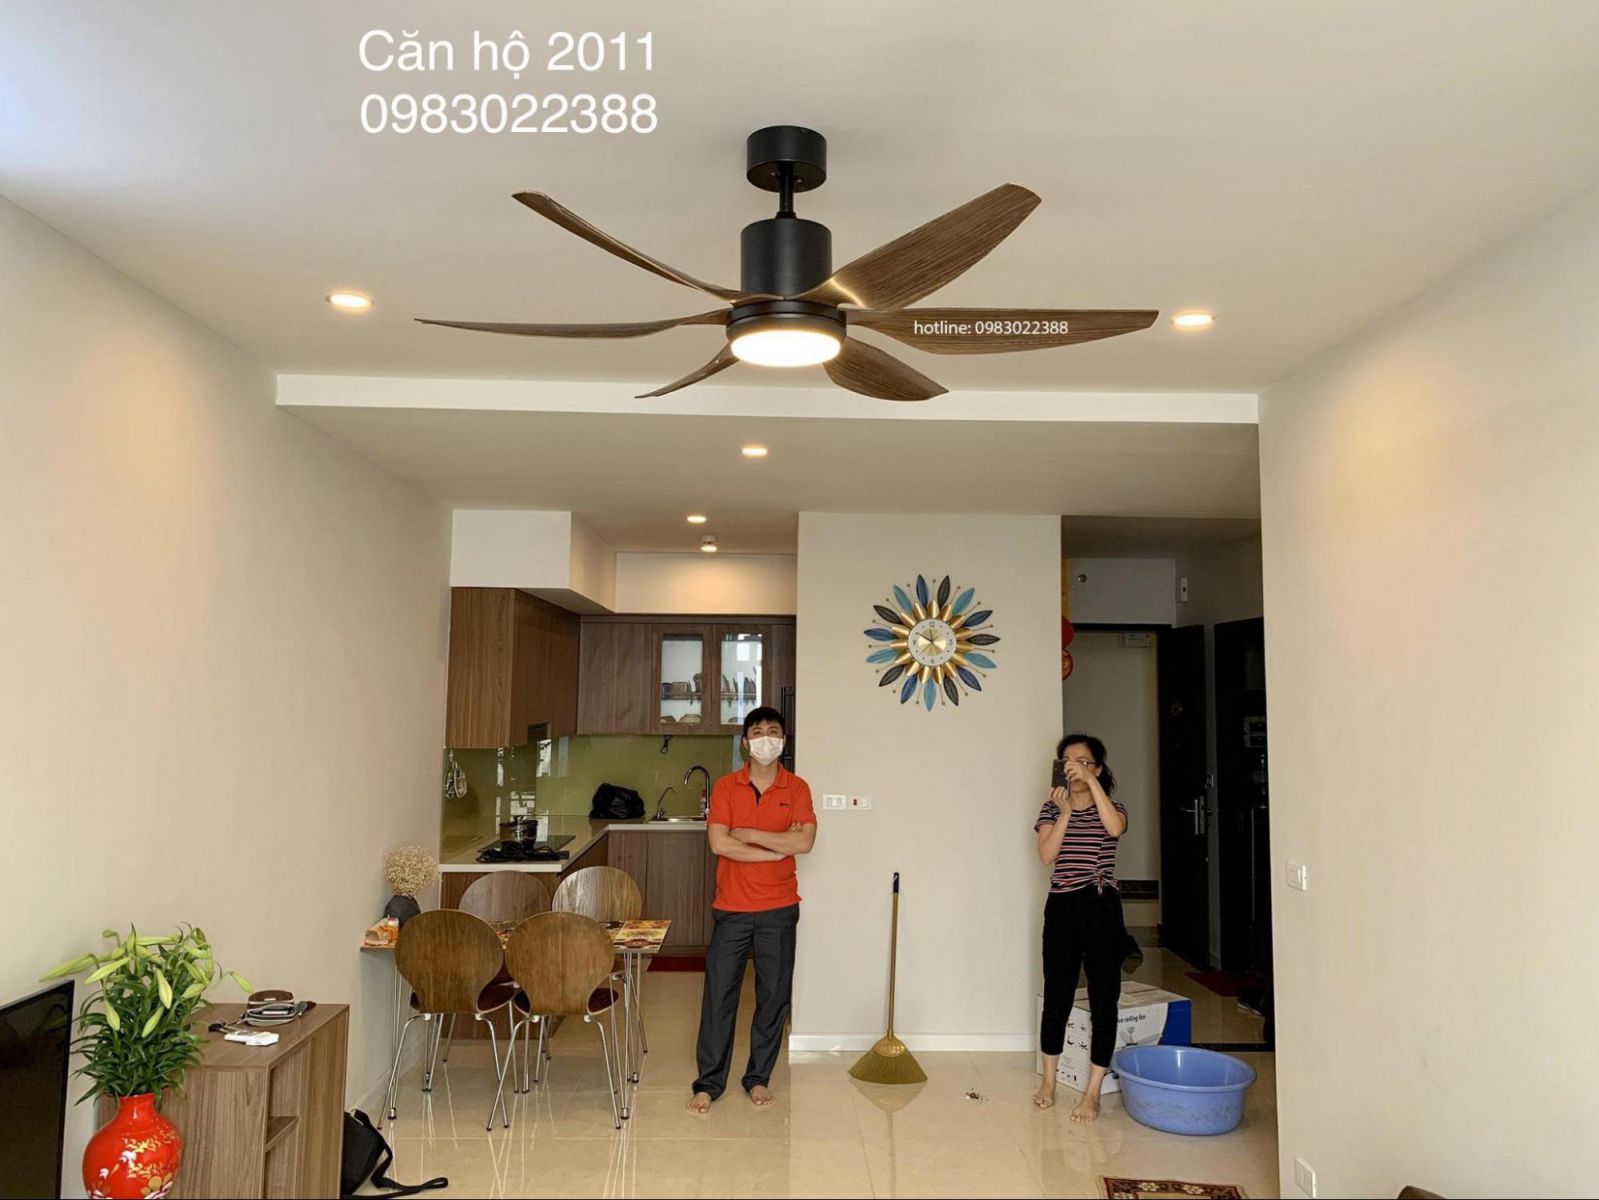 Hình ảnh minh họa quạt trần đèn 6 cánh cho phòng khách rộng